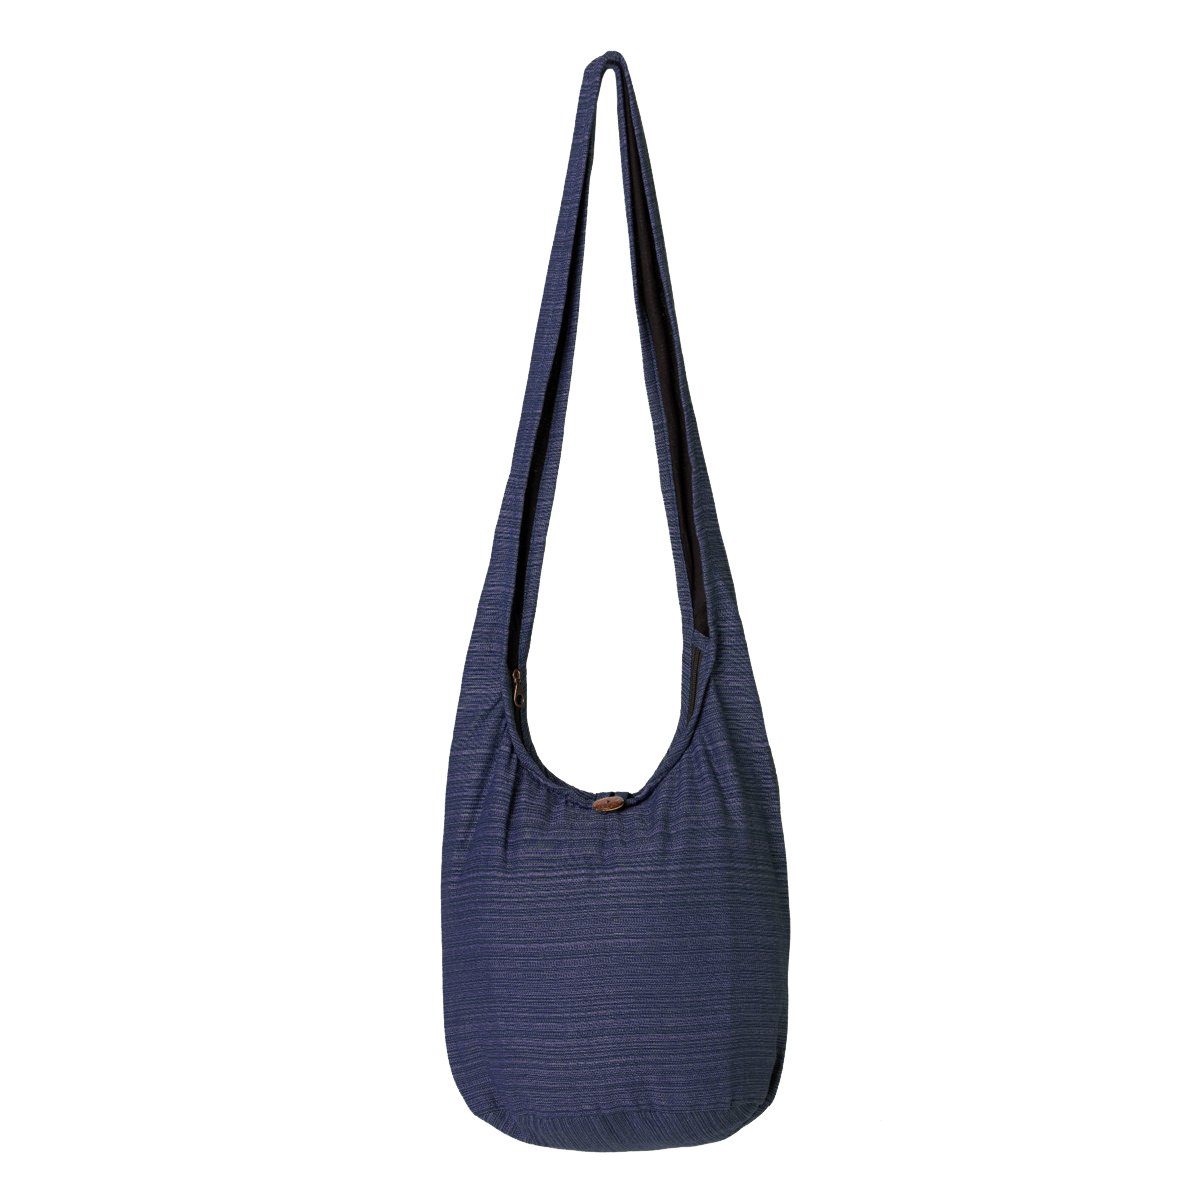 PANASIAM Wickeltasche Schulterbeutel Lini Beuteltasche aus 100% Baumwolle Schultertasche, In 2 Größen auch als Strandtasche Yogatasche oder Handtasche nutzbar dunkel blau | Canvas-Taschen